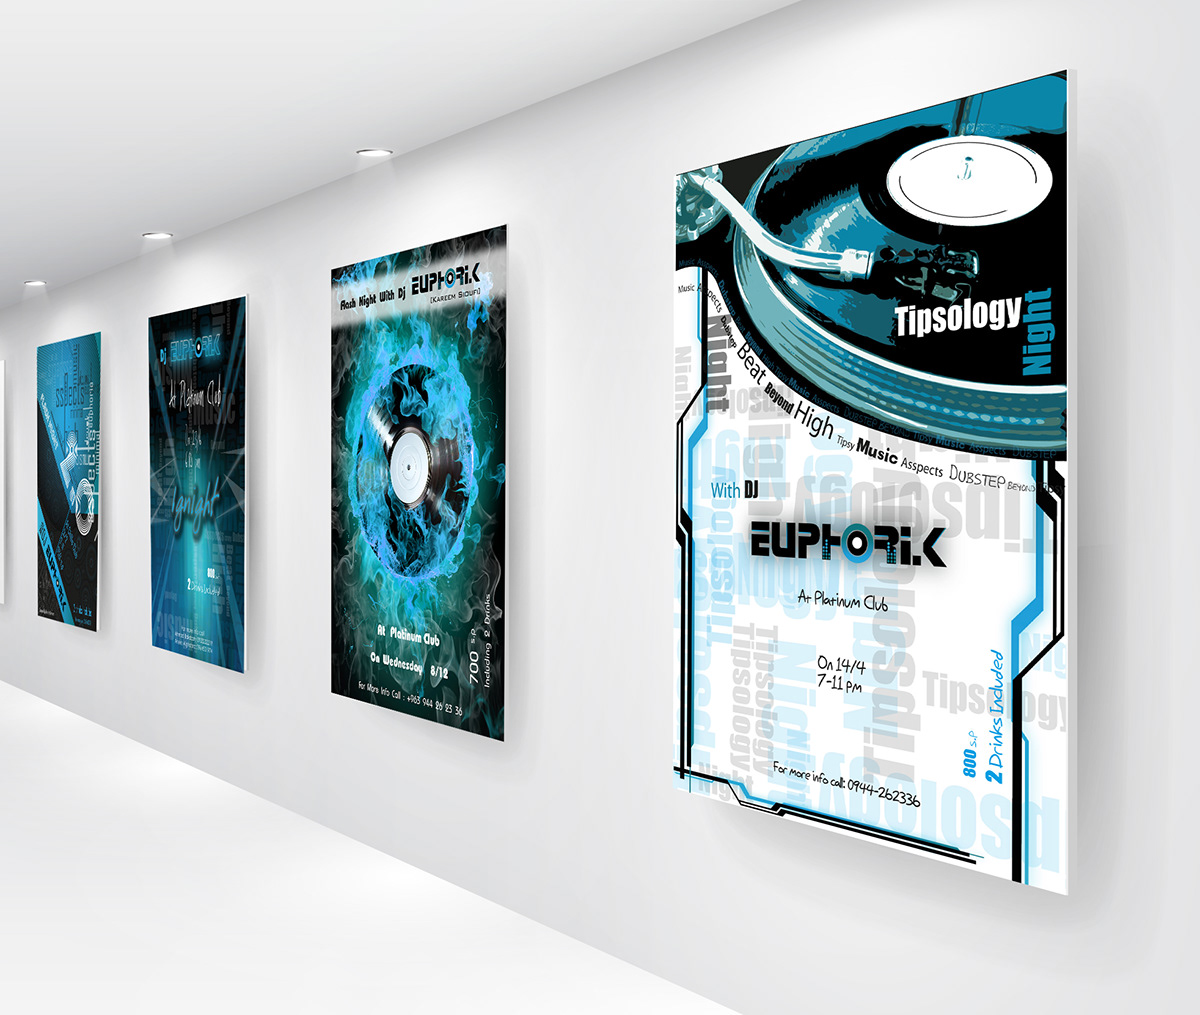 dj euphoria club night blue logo art design poster